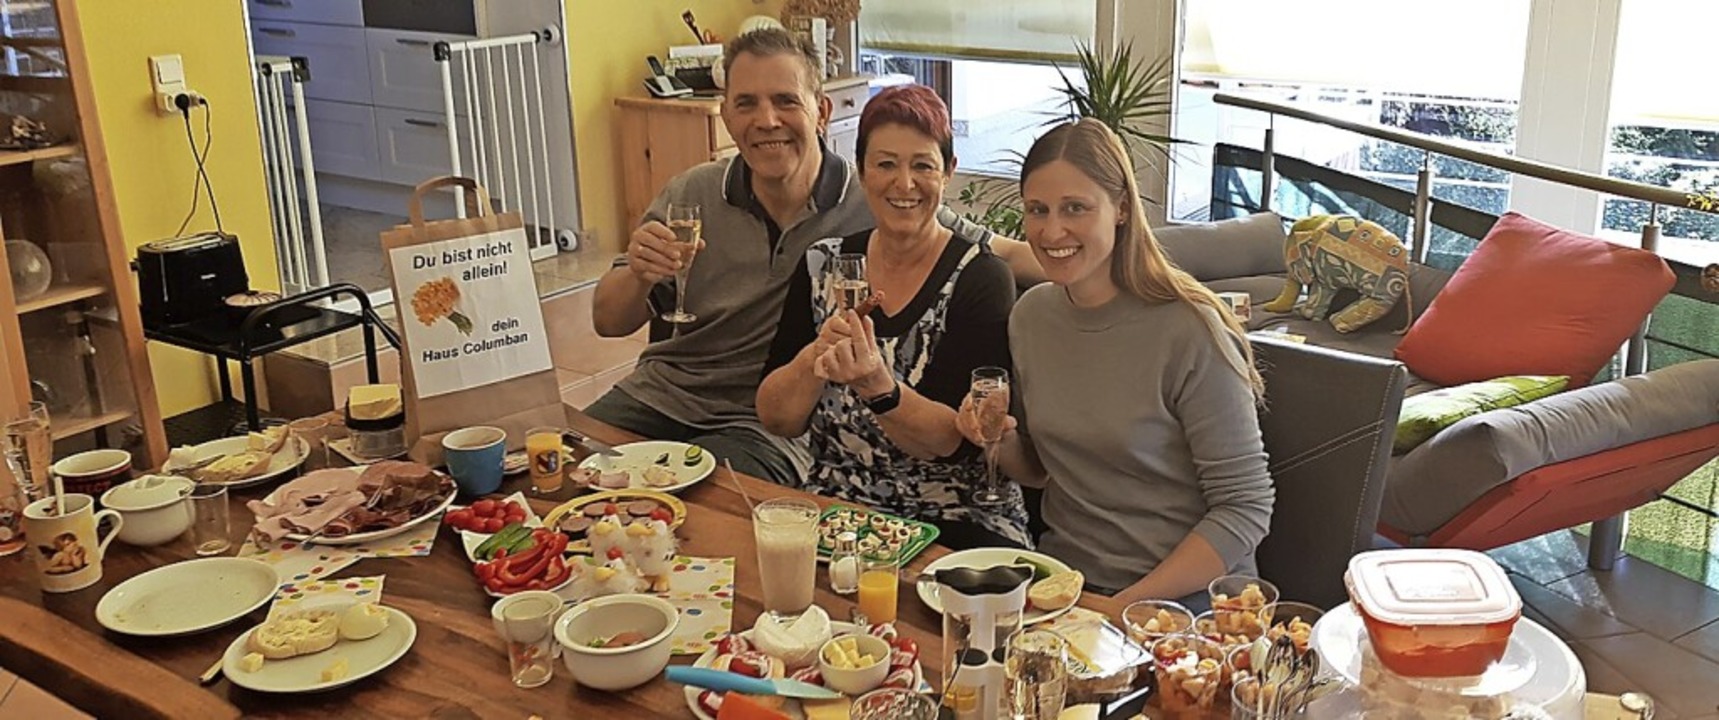 Verwaltungsmitarbeiterin Annette Volke...rühstück mit ihrer Familie schmecken.   | Foto: privat